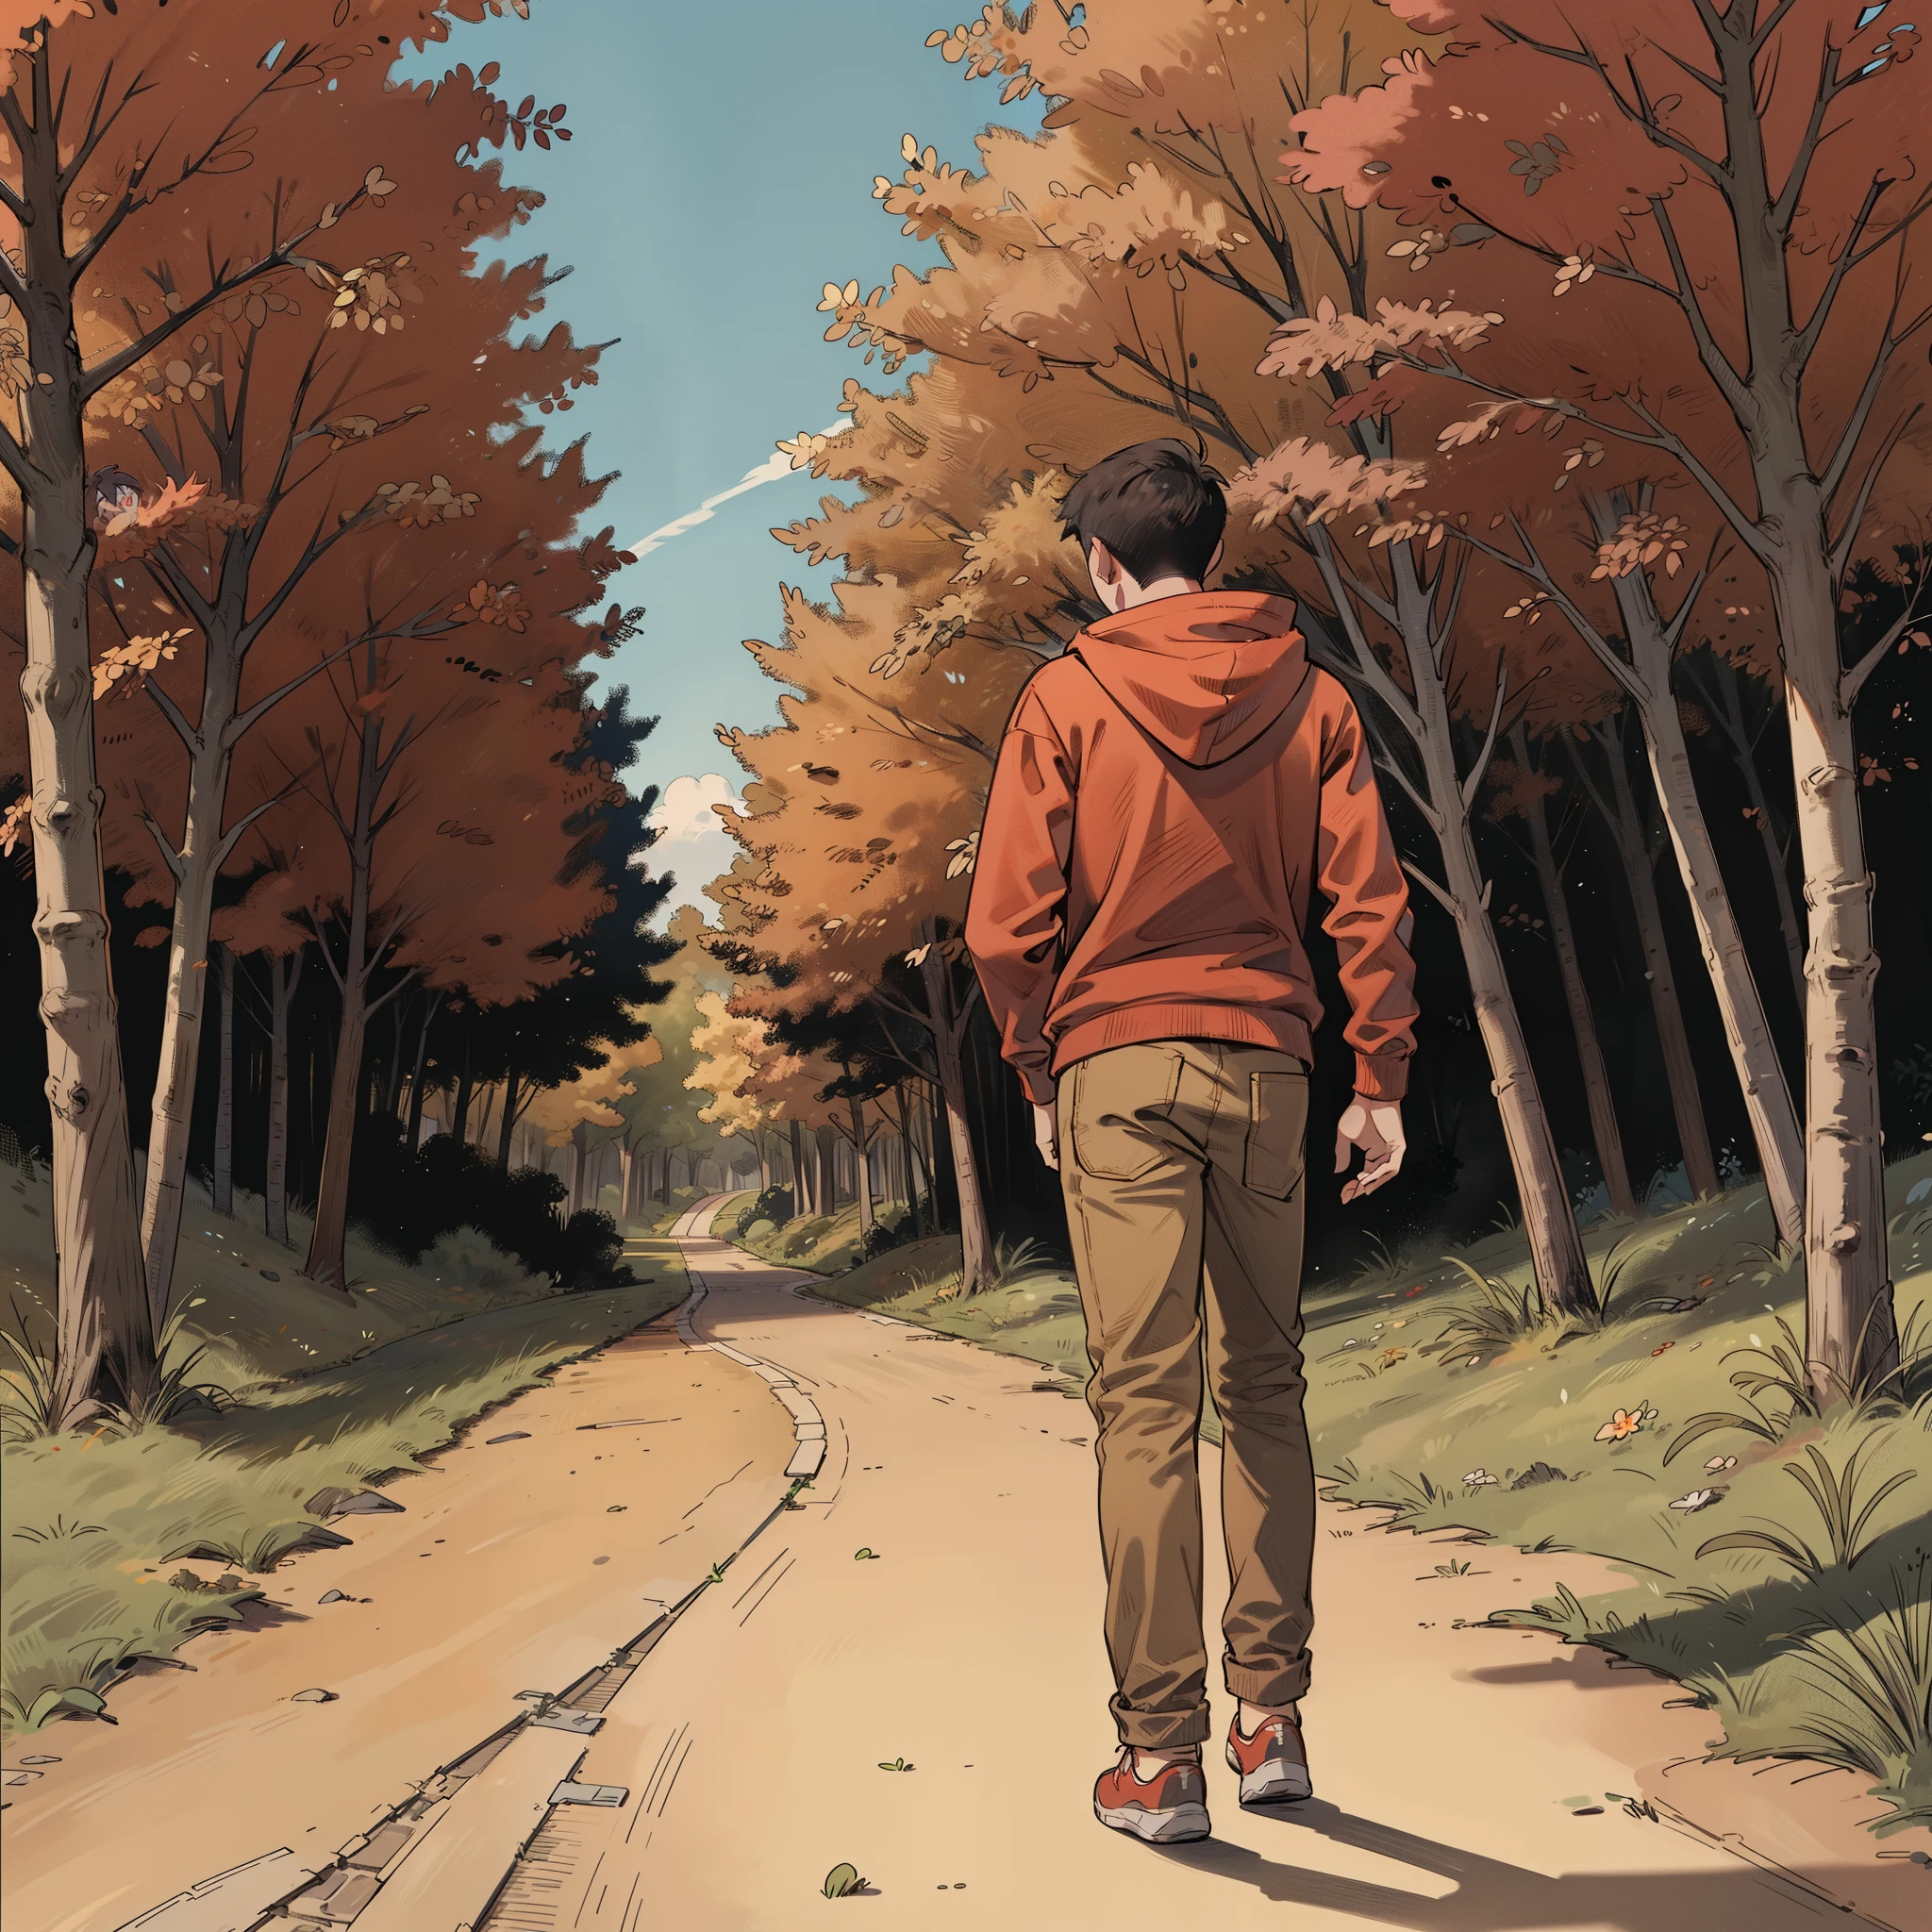 Un chico de 21 años y vistiendo una sudadera con capucha de color rojo caminando por un sendero . Cada línea y sombreado resalta sus características distintivas.. El fondo muestra un cielo azul, con arboles por todas partes. (su trasero será visible)